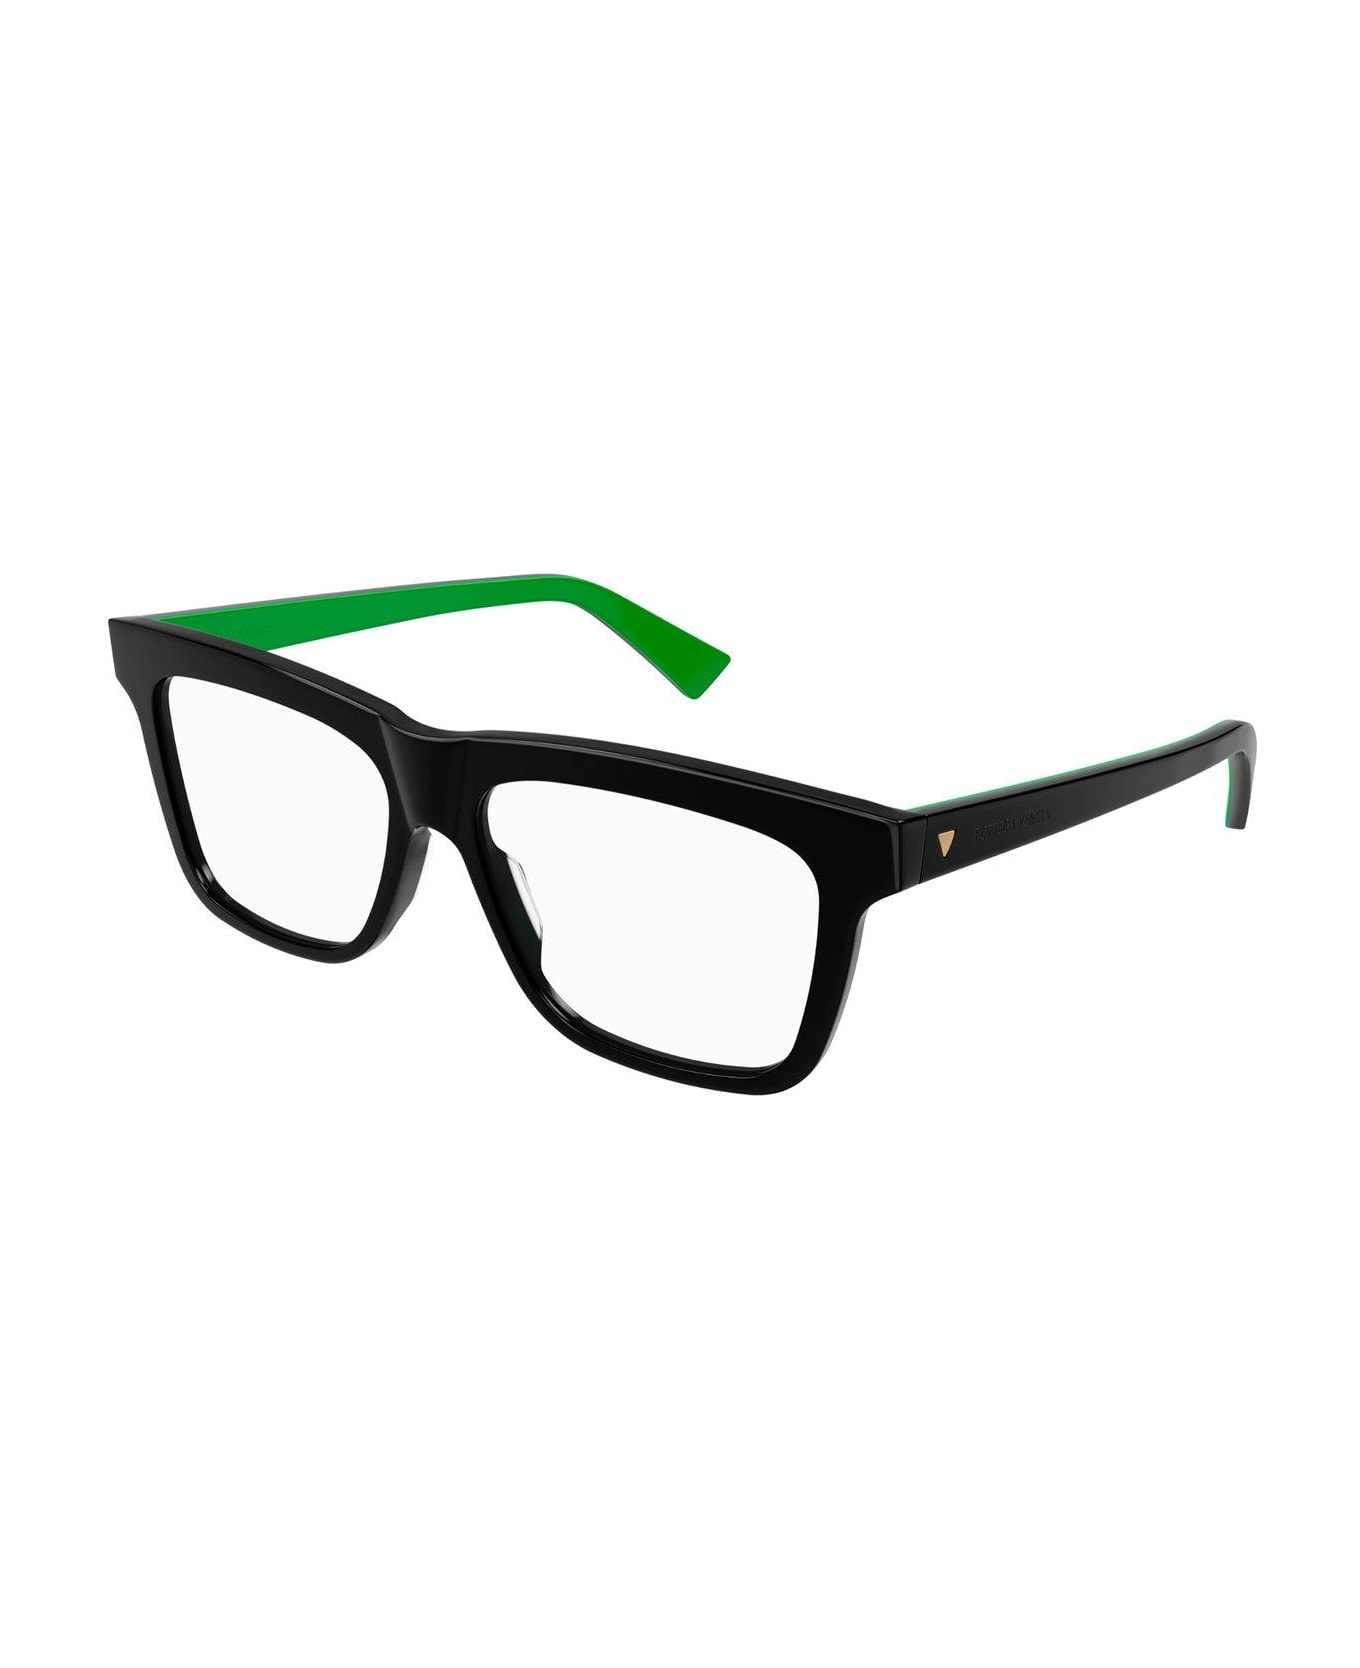 Bottega Veneta Eyewear Square-frame Glasses - 005 black black transpare